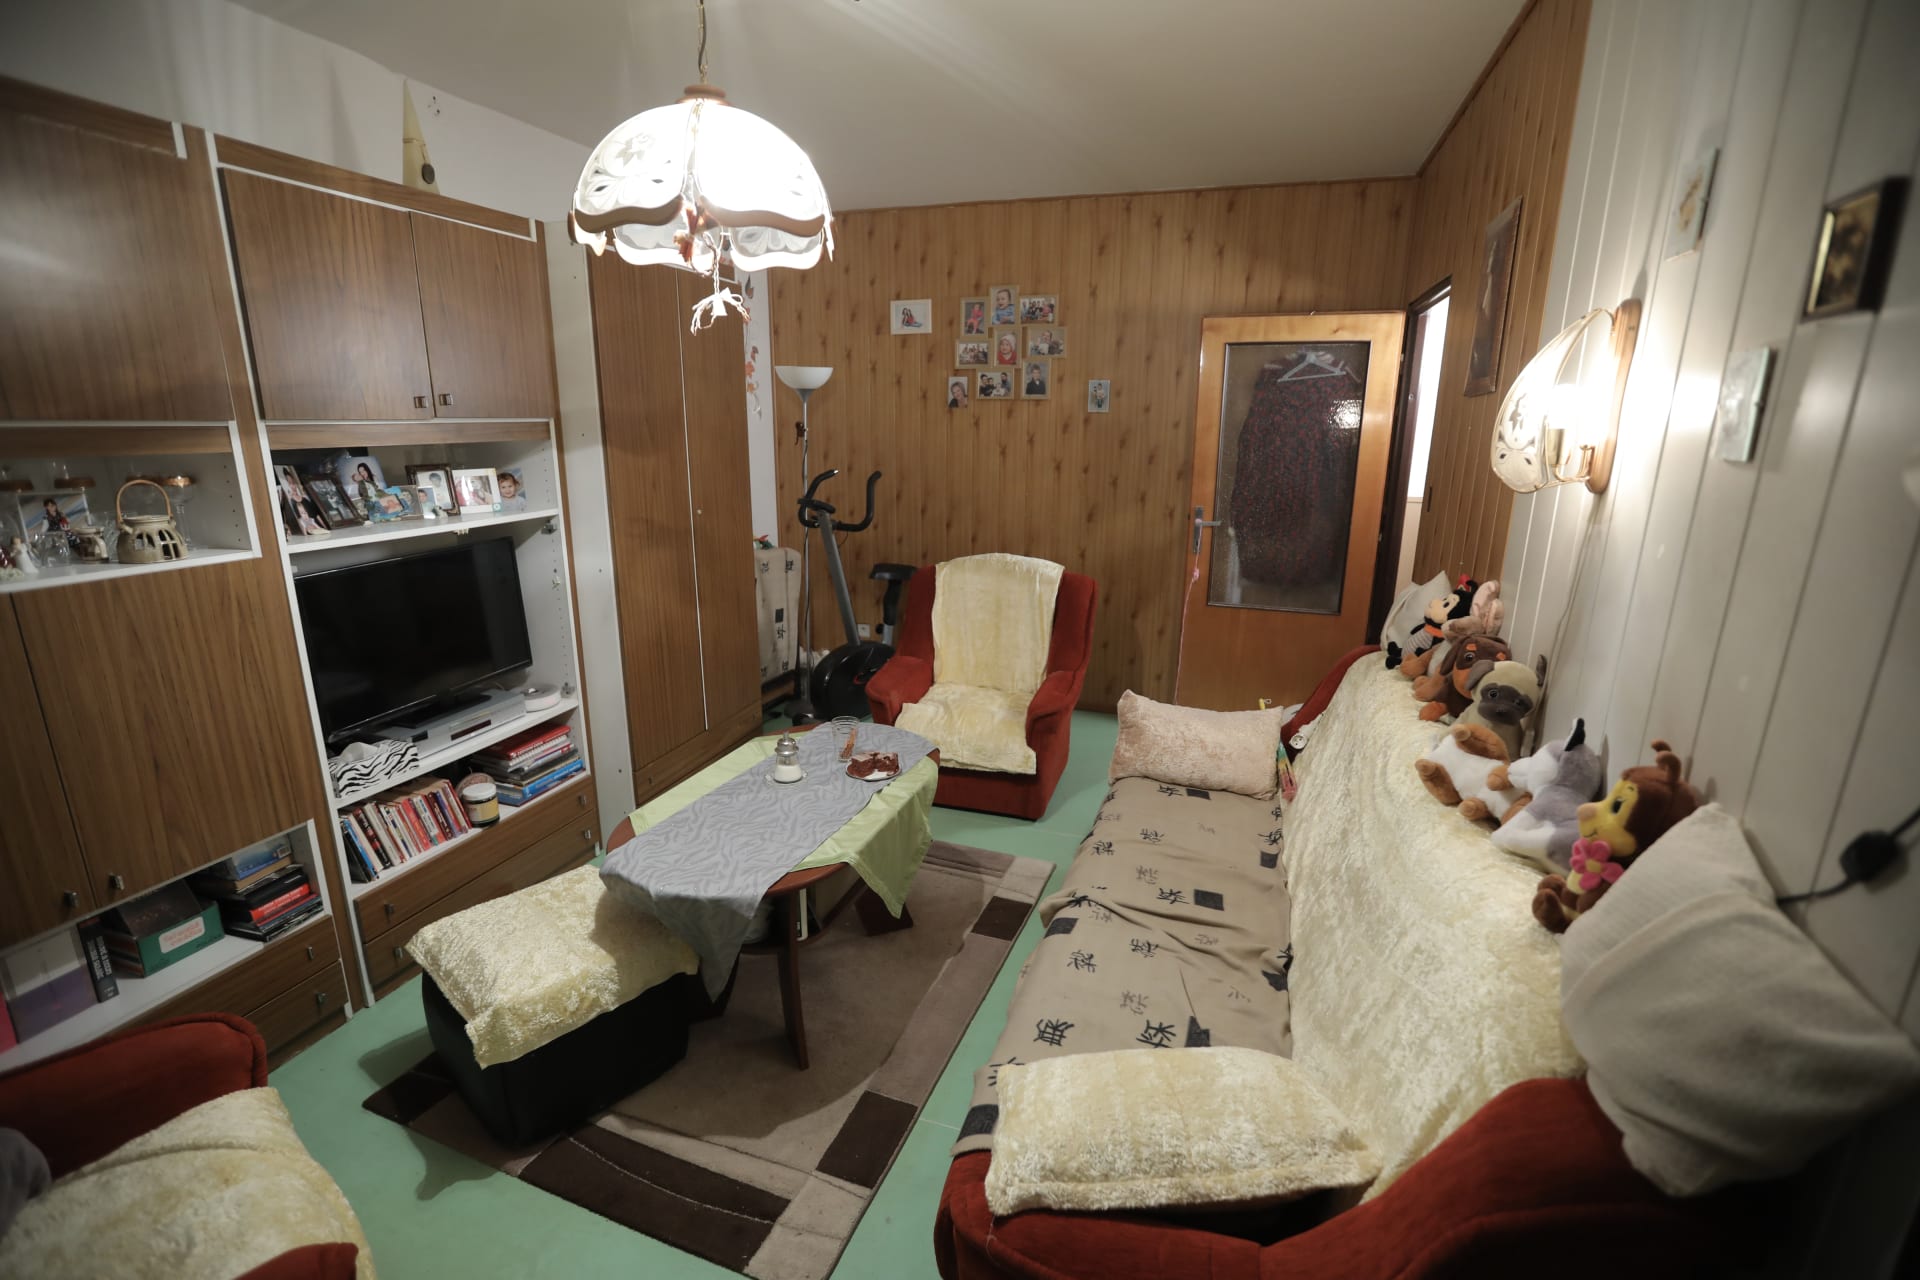 Dagmar si přála změnit především obývací pokoj, v němž byl starý nábytek